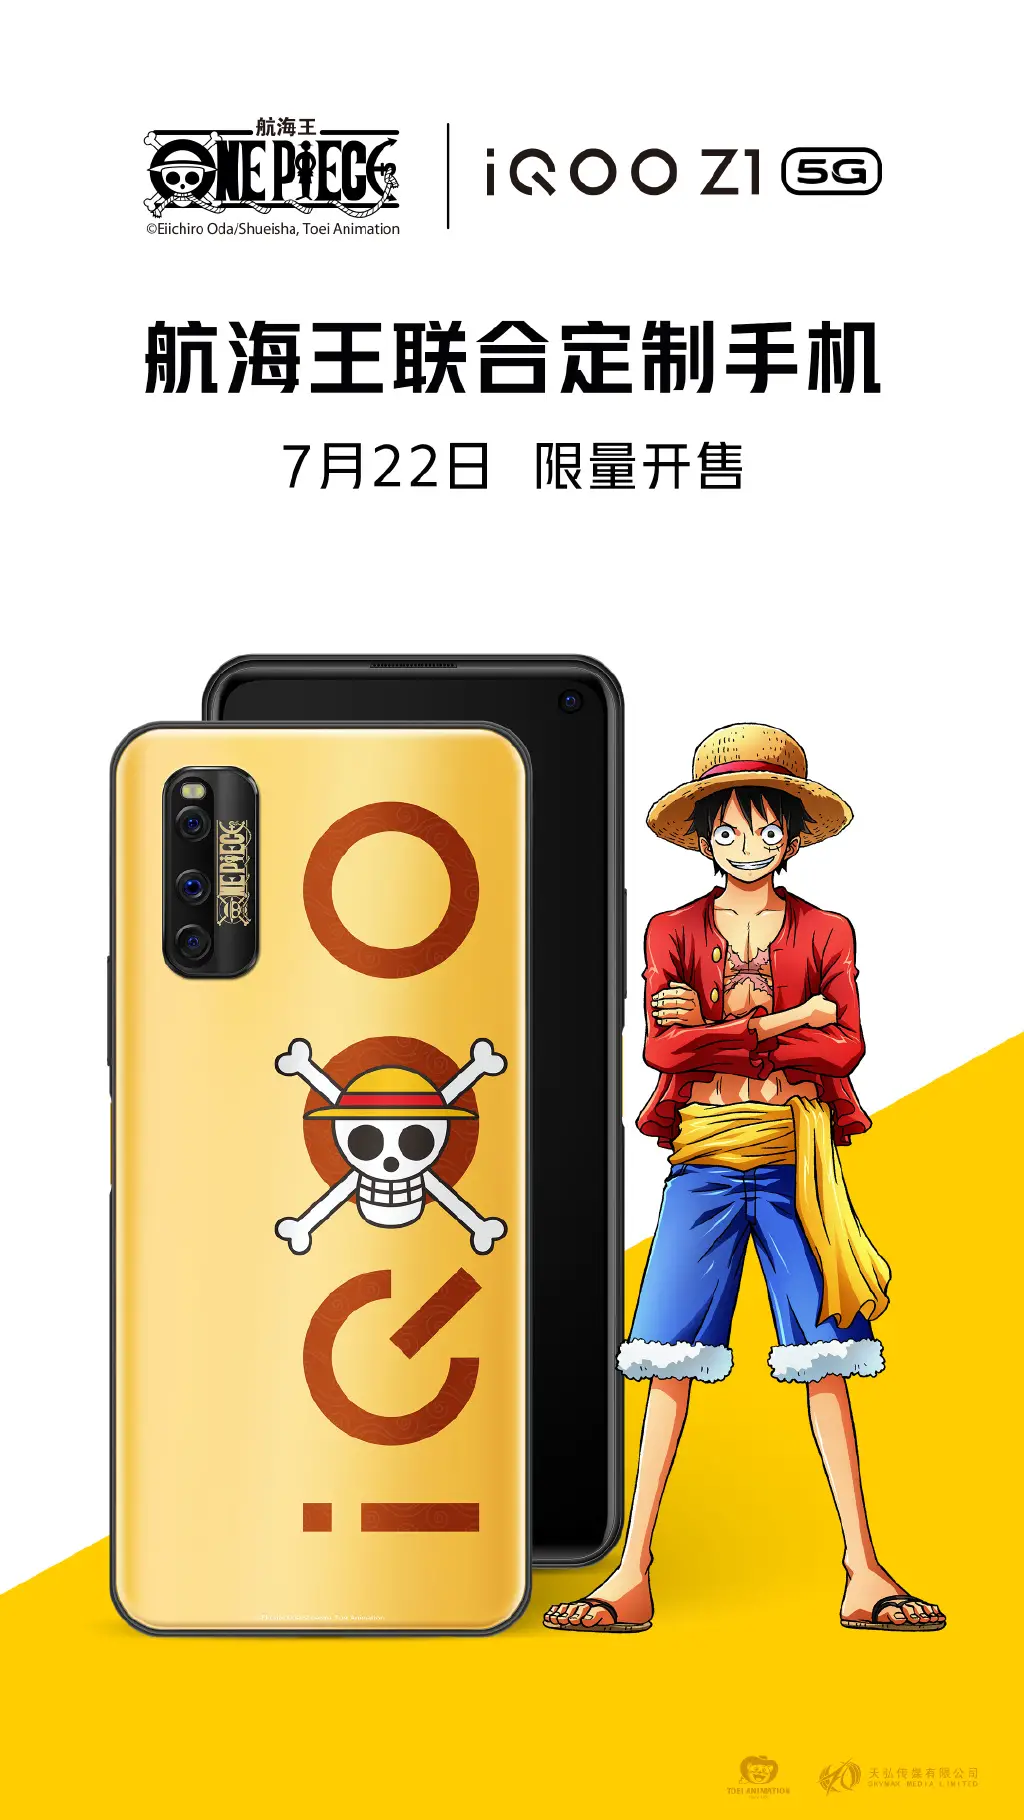 iQOO Z1 One Piece Edition